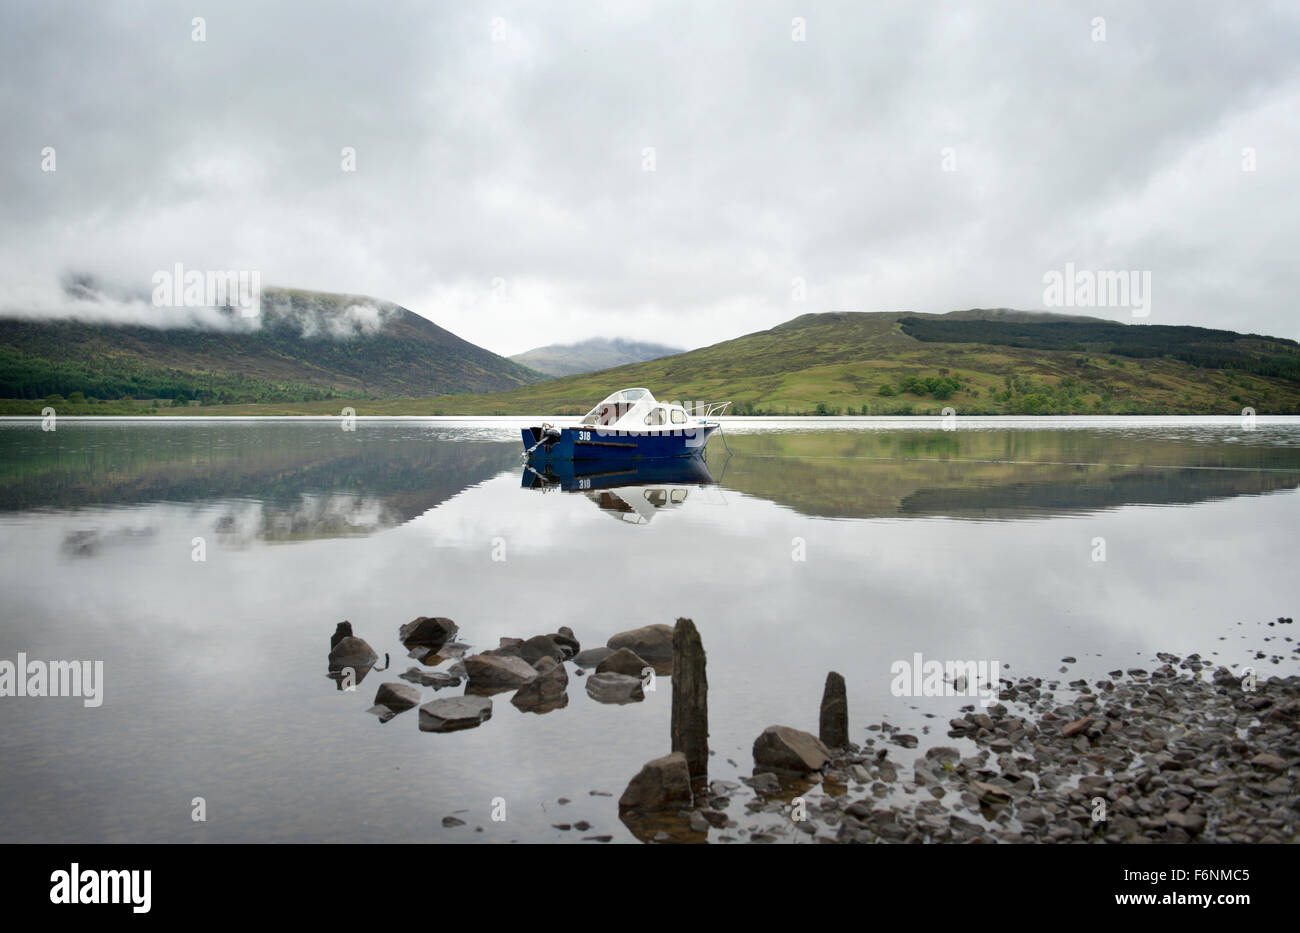 Et pittoresques du Loch Arkaig eaux tranqill dans les Highlands d'Ecosse. Eaux calmes réflexions parfaitement Banque D'Images